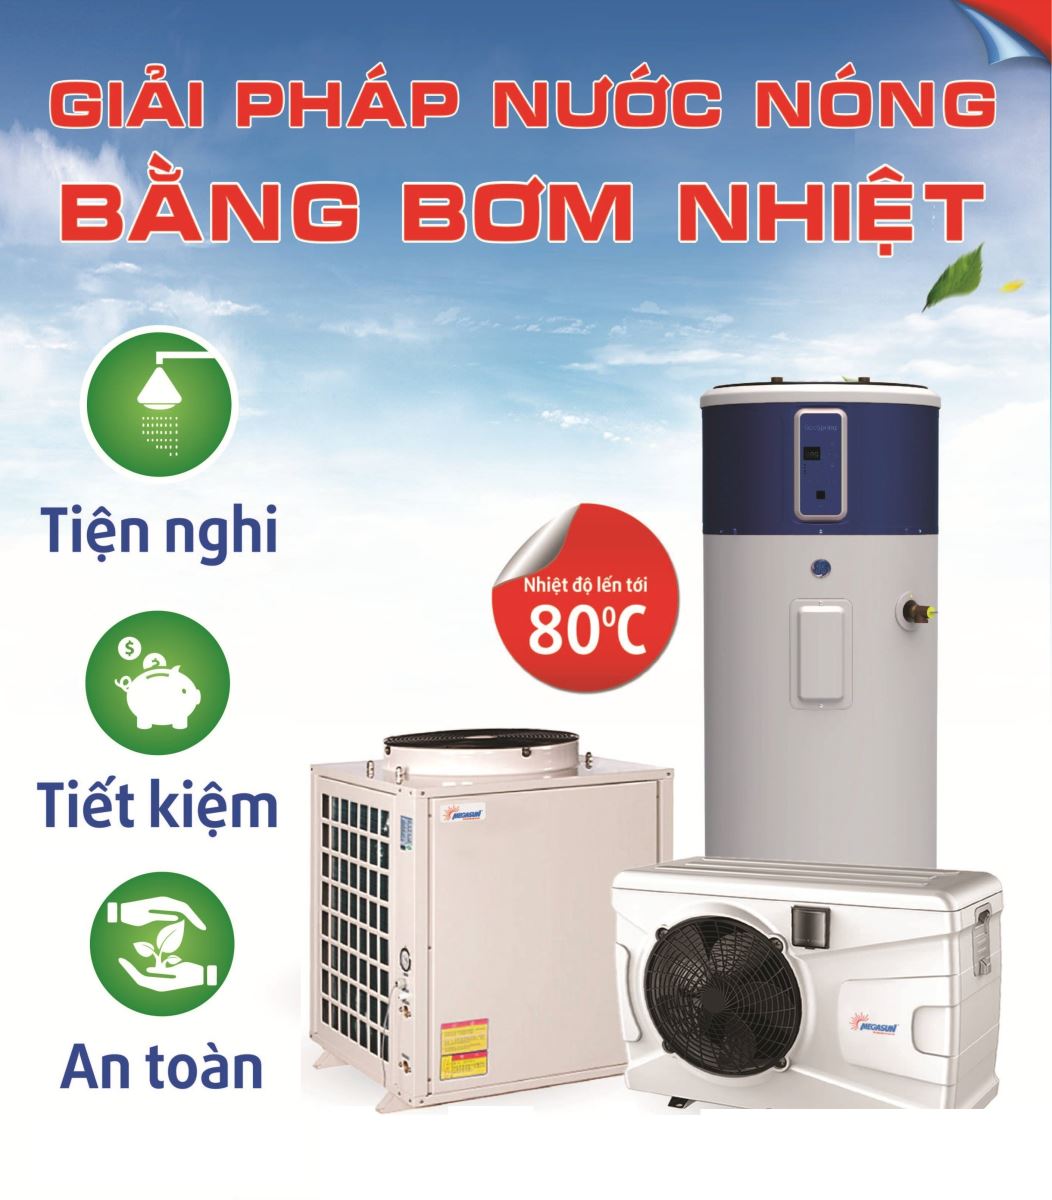 Giải pháp cấp nước nóng cho spa tại Hà Nội - Ảnh 1